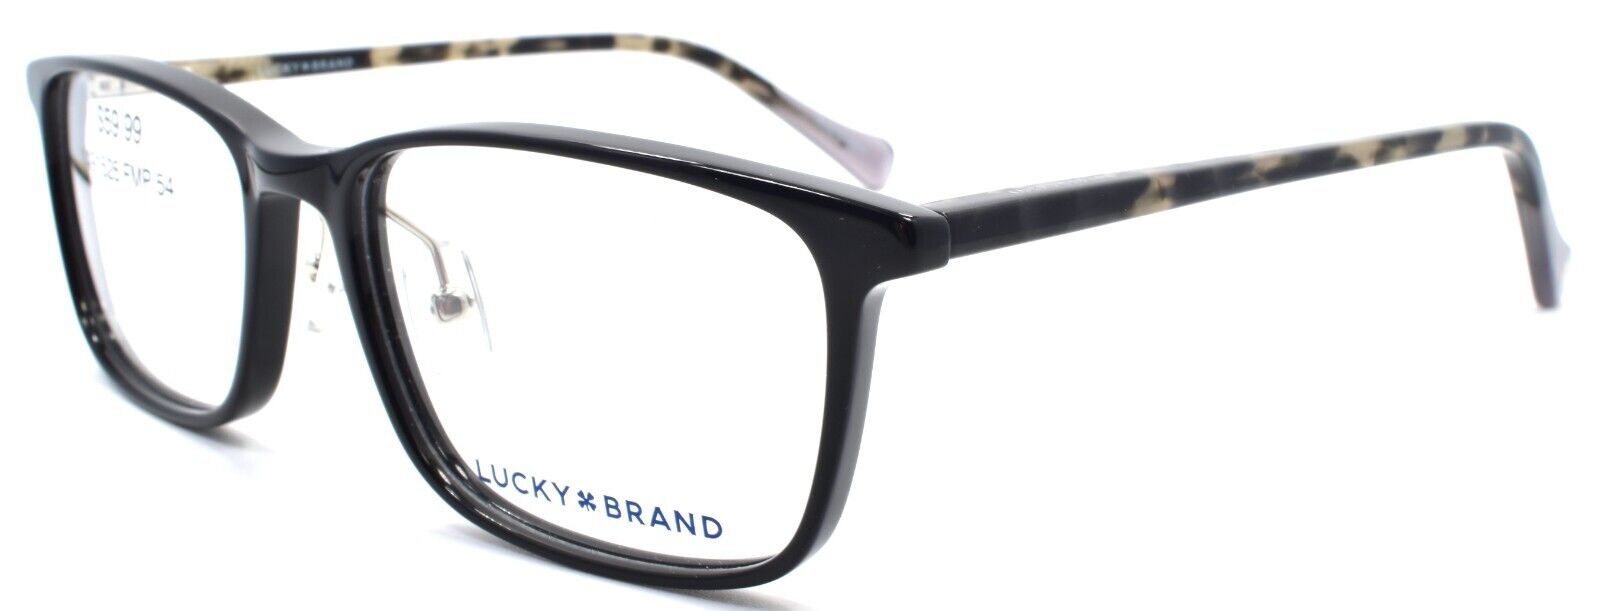 1-LUCKY BRAND VLBD516 Men's Eyeglasses Frames 54-17-140 Black-751286352627-IKSpecs